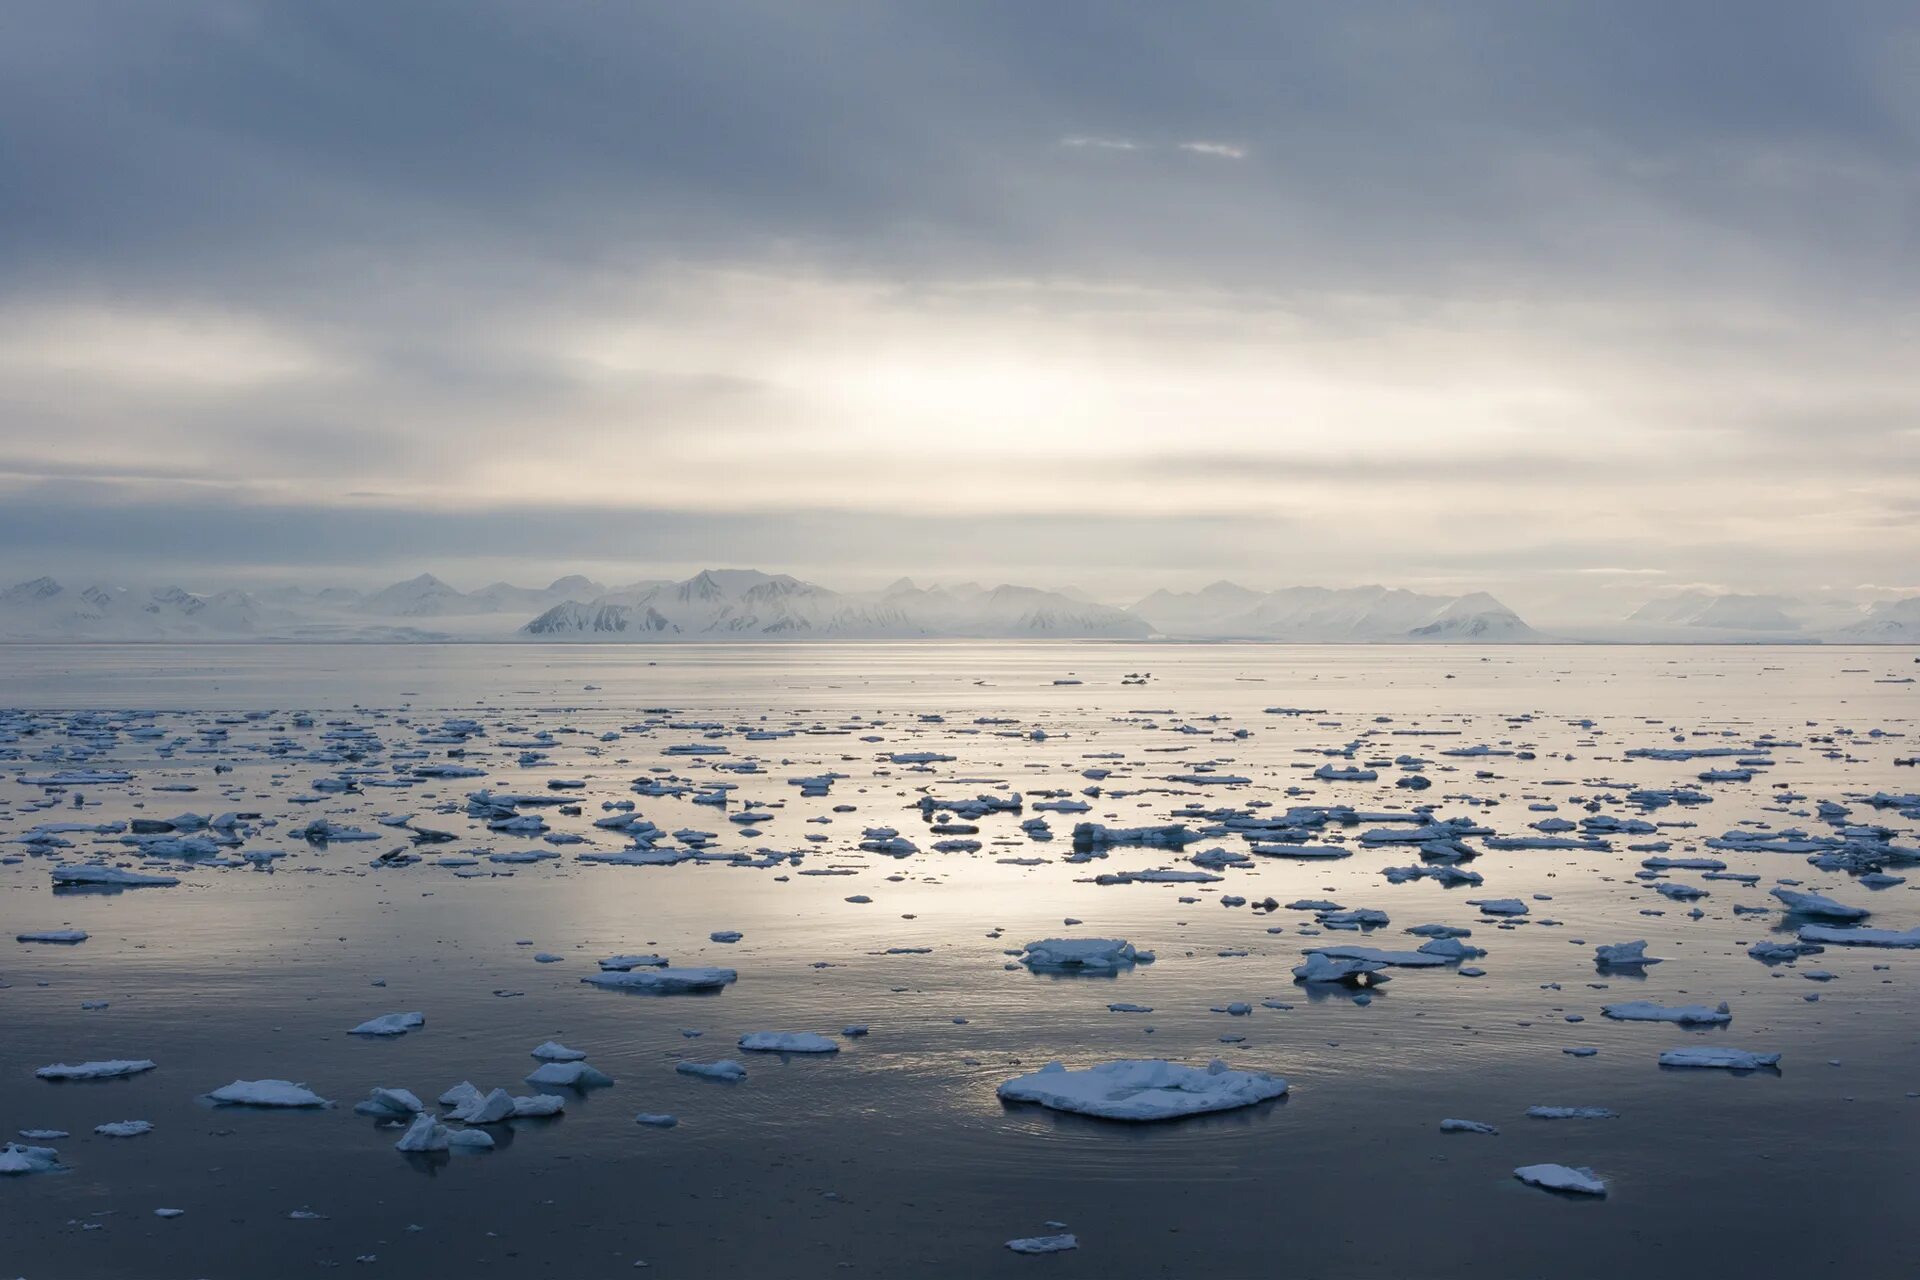 Белое море Северный Ледовитый океан. Балтийское море Северный Ледовитый океан. Северно Ледовитый океан канадский архипелаг. Арктический пейзаж. Отчет от южных морей до полярного края